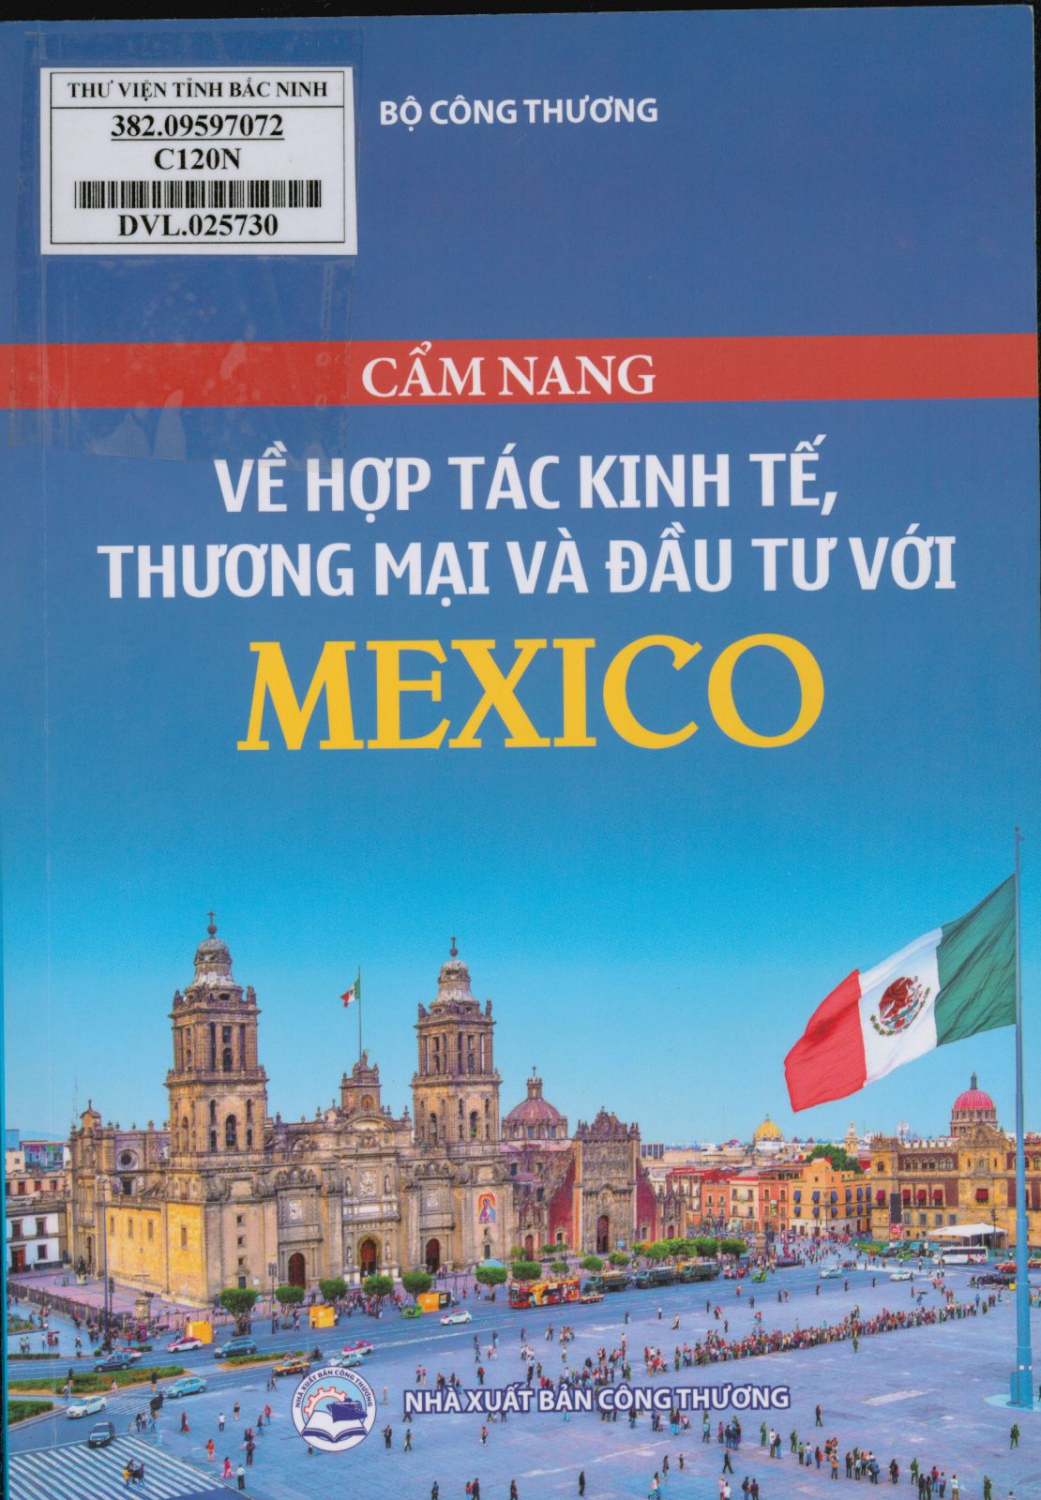 Cẩm nang về hợp tác kinh tế, thương mại và đầu tư với Mexico